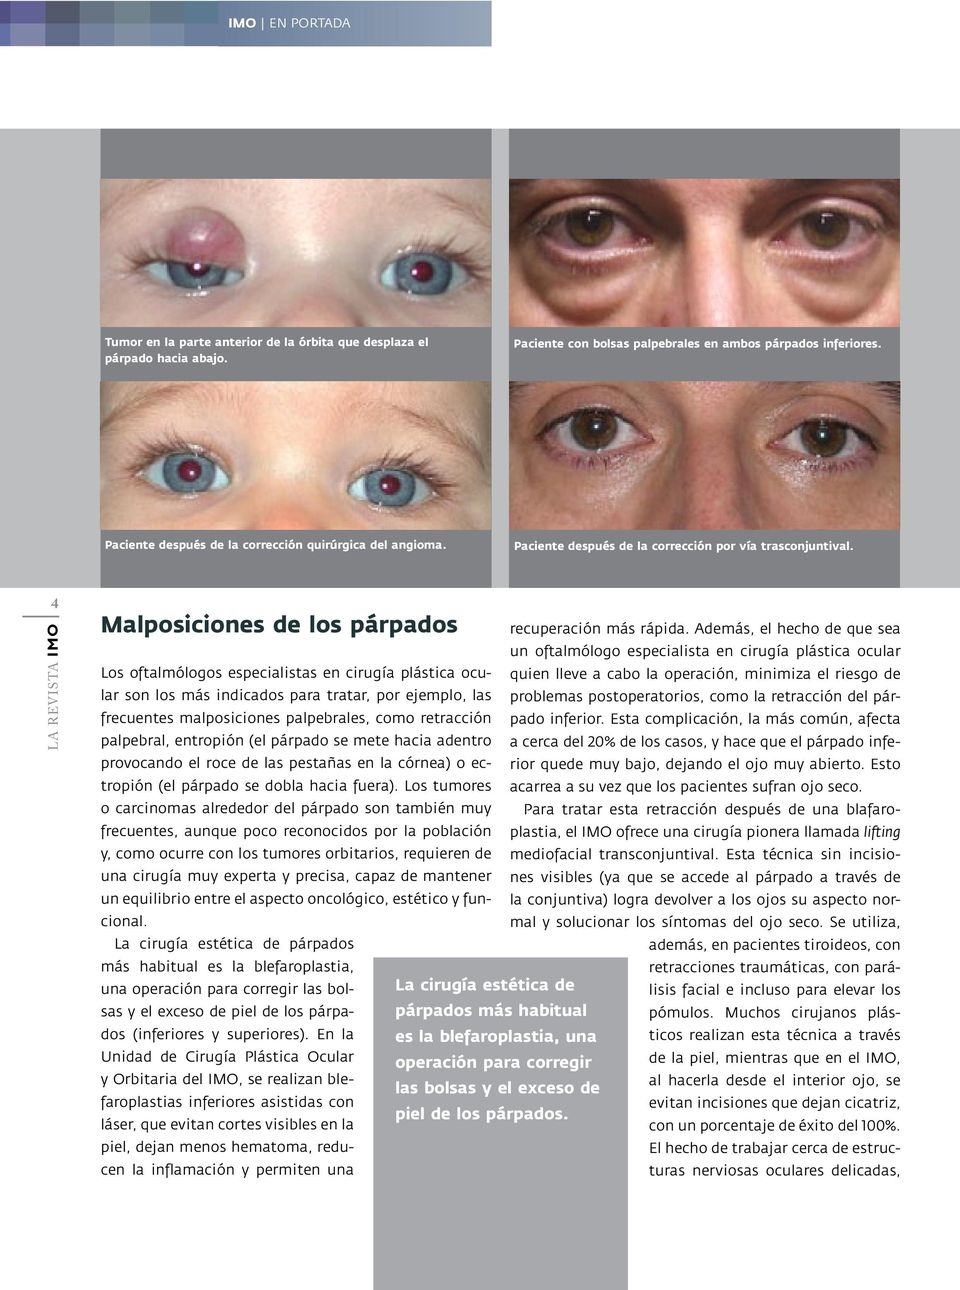 4 Malposiciones de los párpados Los oftalmólogos especialistas en cirugía plástica ocular son los más indicados para tratar, por ejemplo, las frecuentes malposiciones palpebrales, como retracción